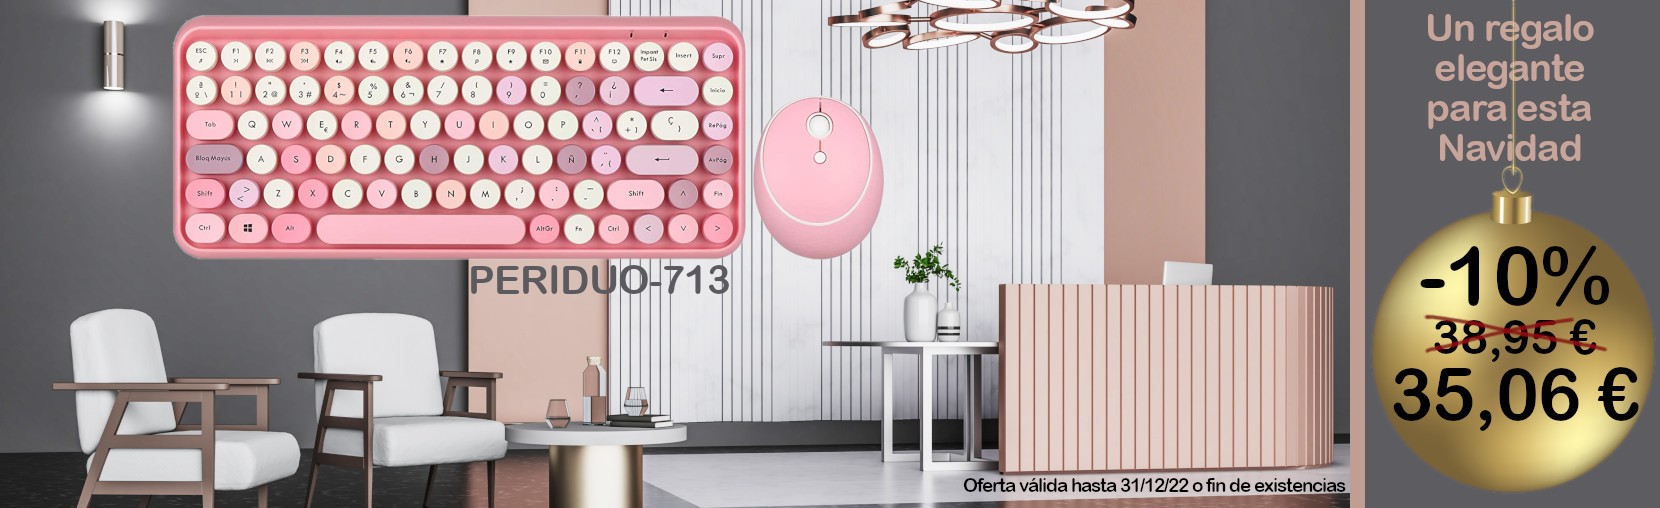 Oferta kit teclado + ratón inalámbricos rosa